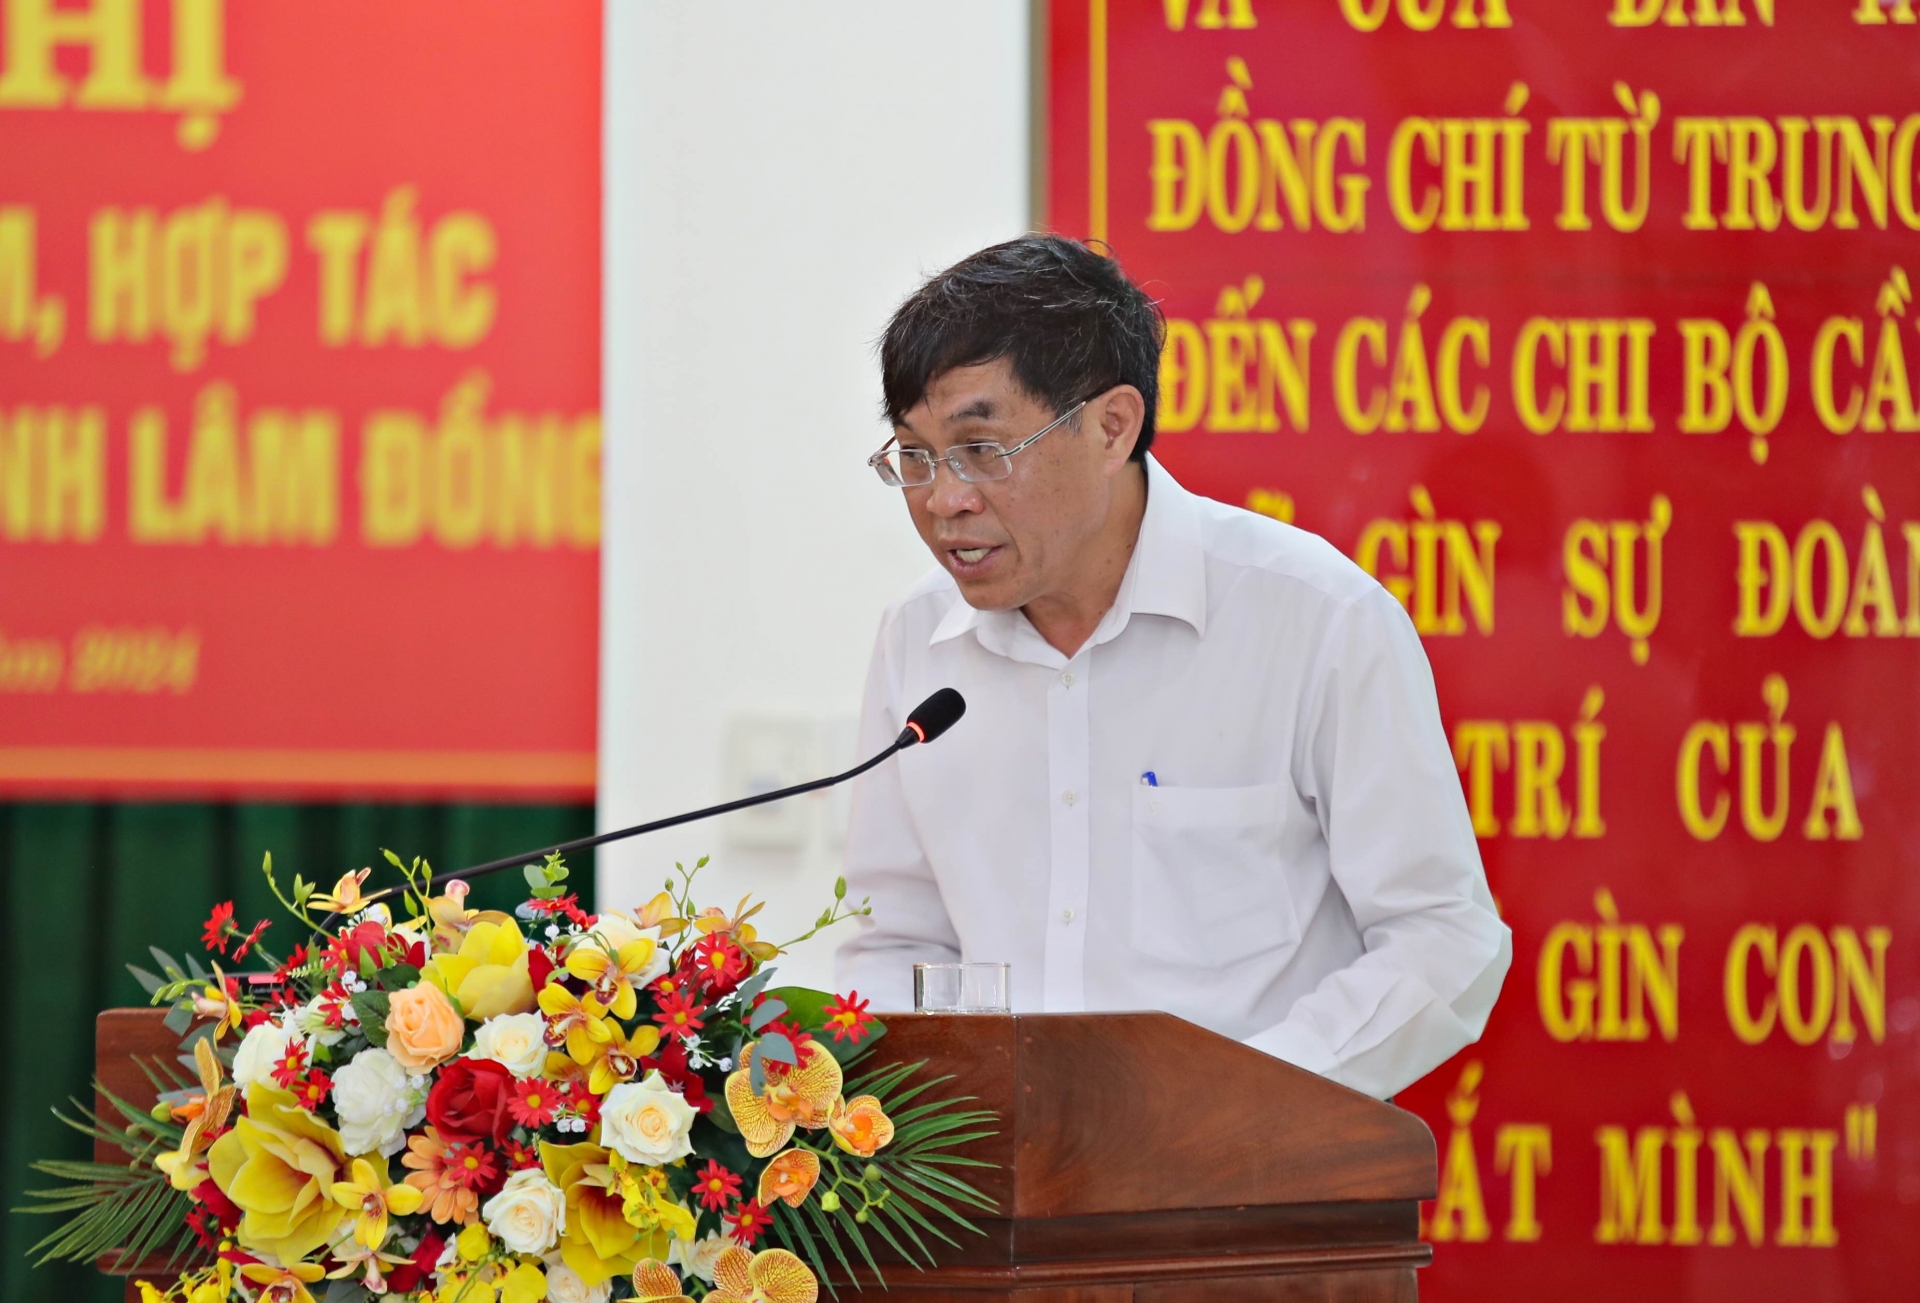 Đồng chí Võ Ngọc Hiệp, Phó Chủ tịch UBND tỉnh Lâm Đồng báo cáo tình hình hợp tác giữa hai địa phương thời gian qua